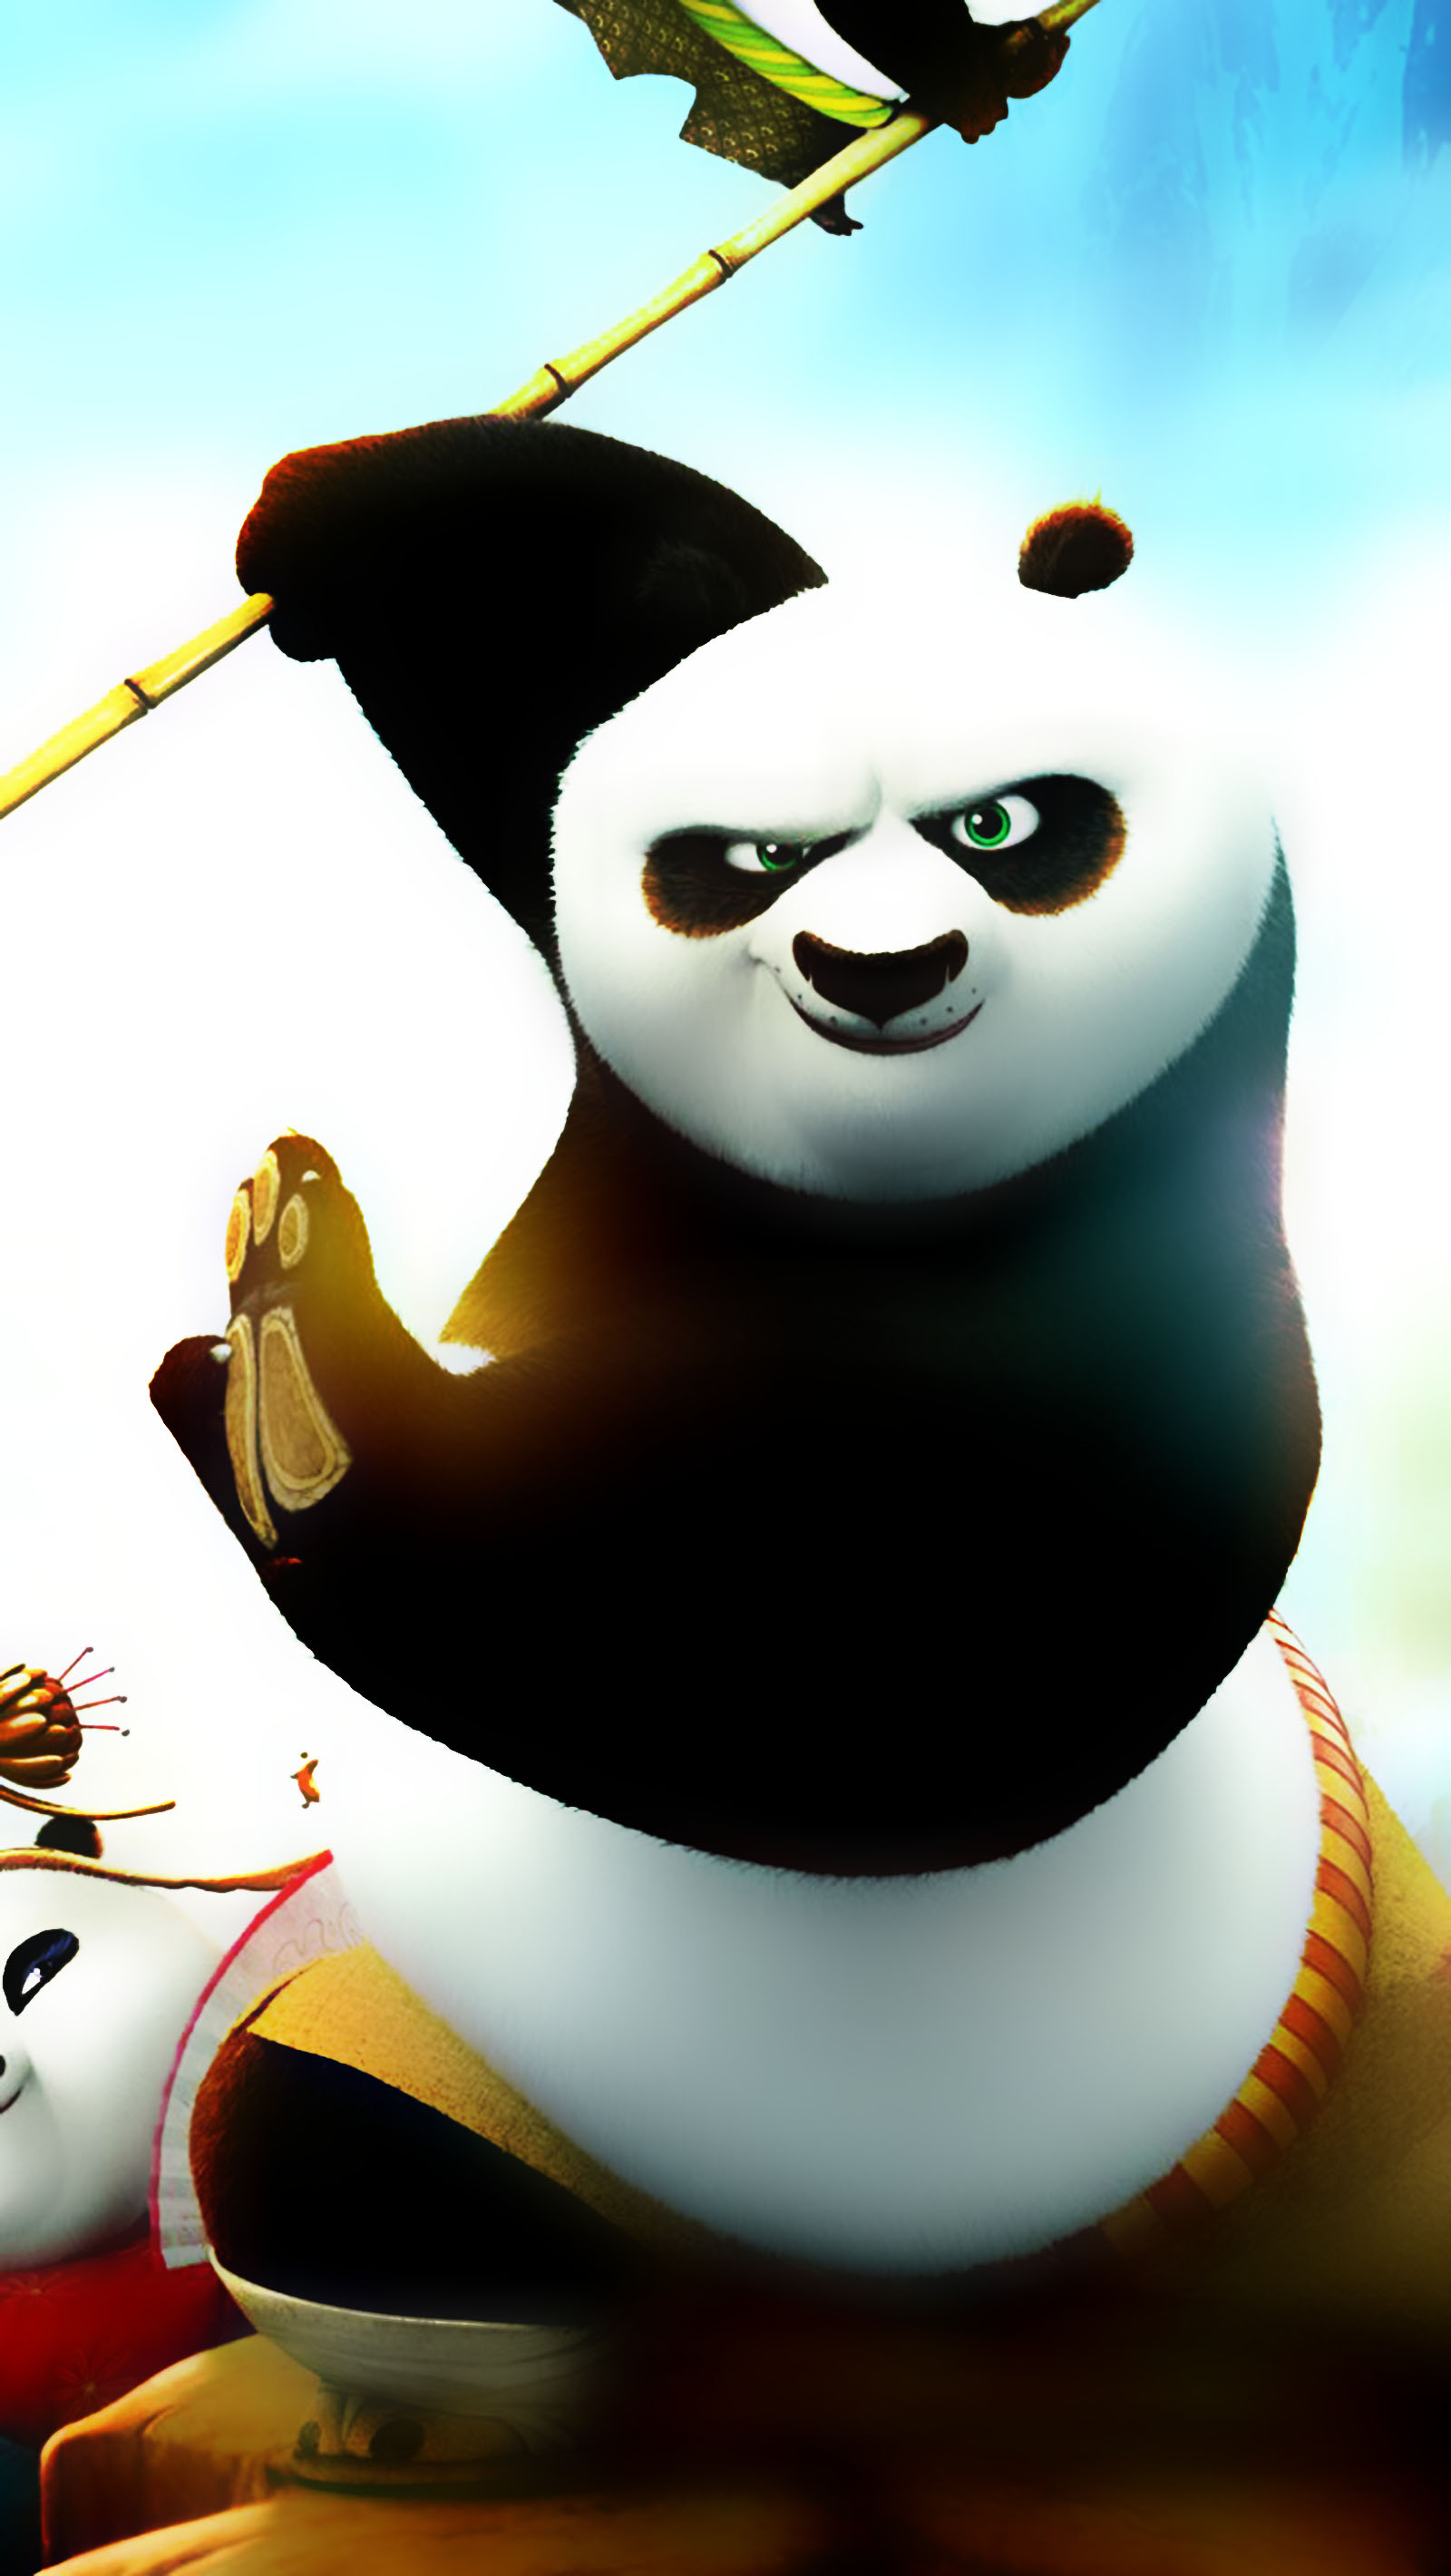 Gấu trúc Panda: Chiêm ngưỡng vẻ đáng yêu và hài hước của gấu trúc Panda đáng yêu nhất trong vườn thú. Hãy xem hình ảnh của chúng tôi để cảm nhận được sự đáng yêu của loài vật này.